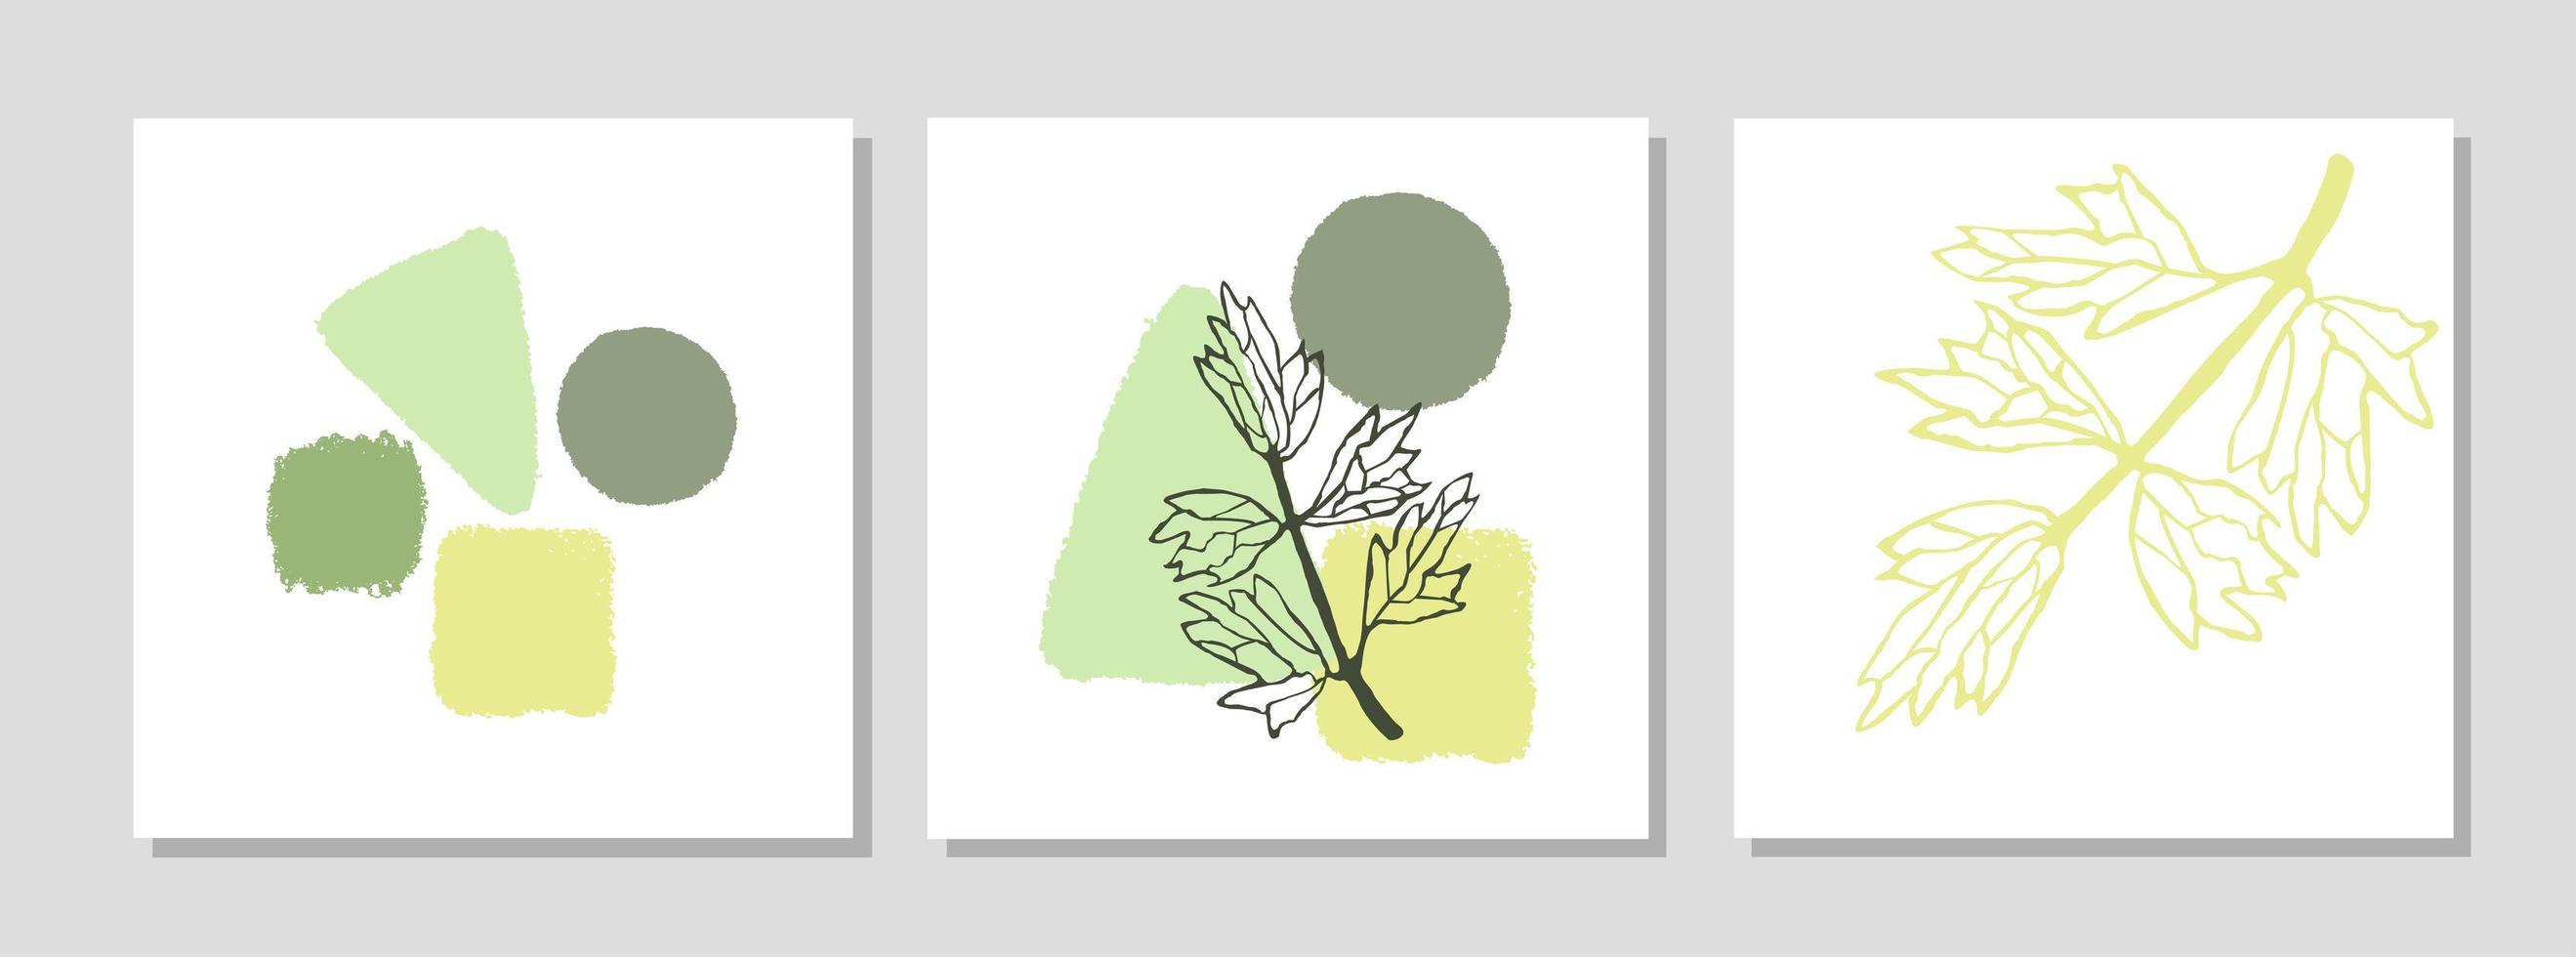 sertie d'affiche moderne de collage avec des formes abstraites et illustration de plante vecteur